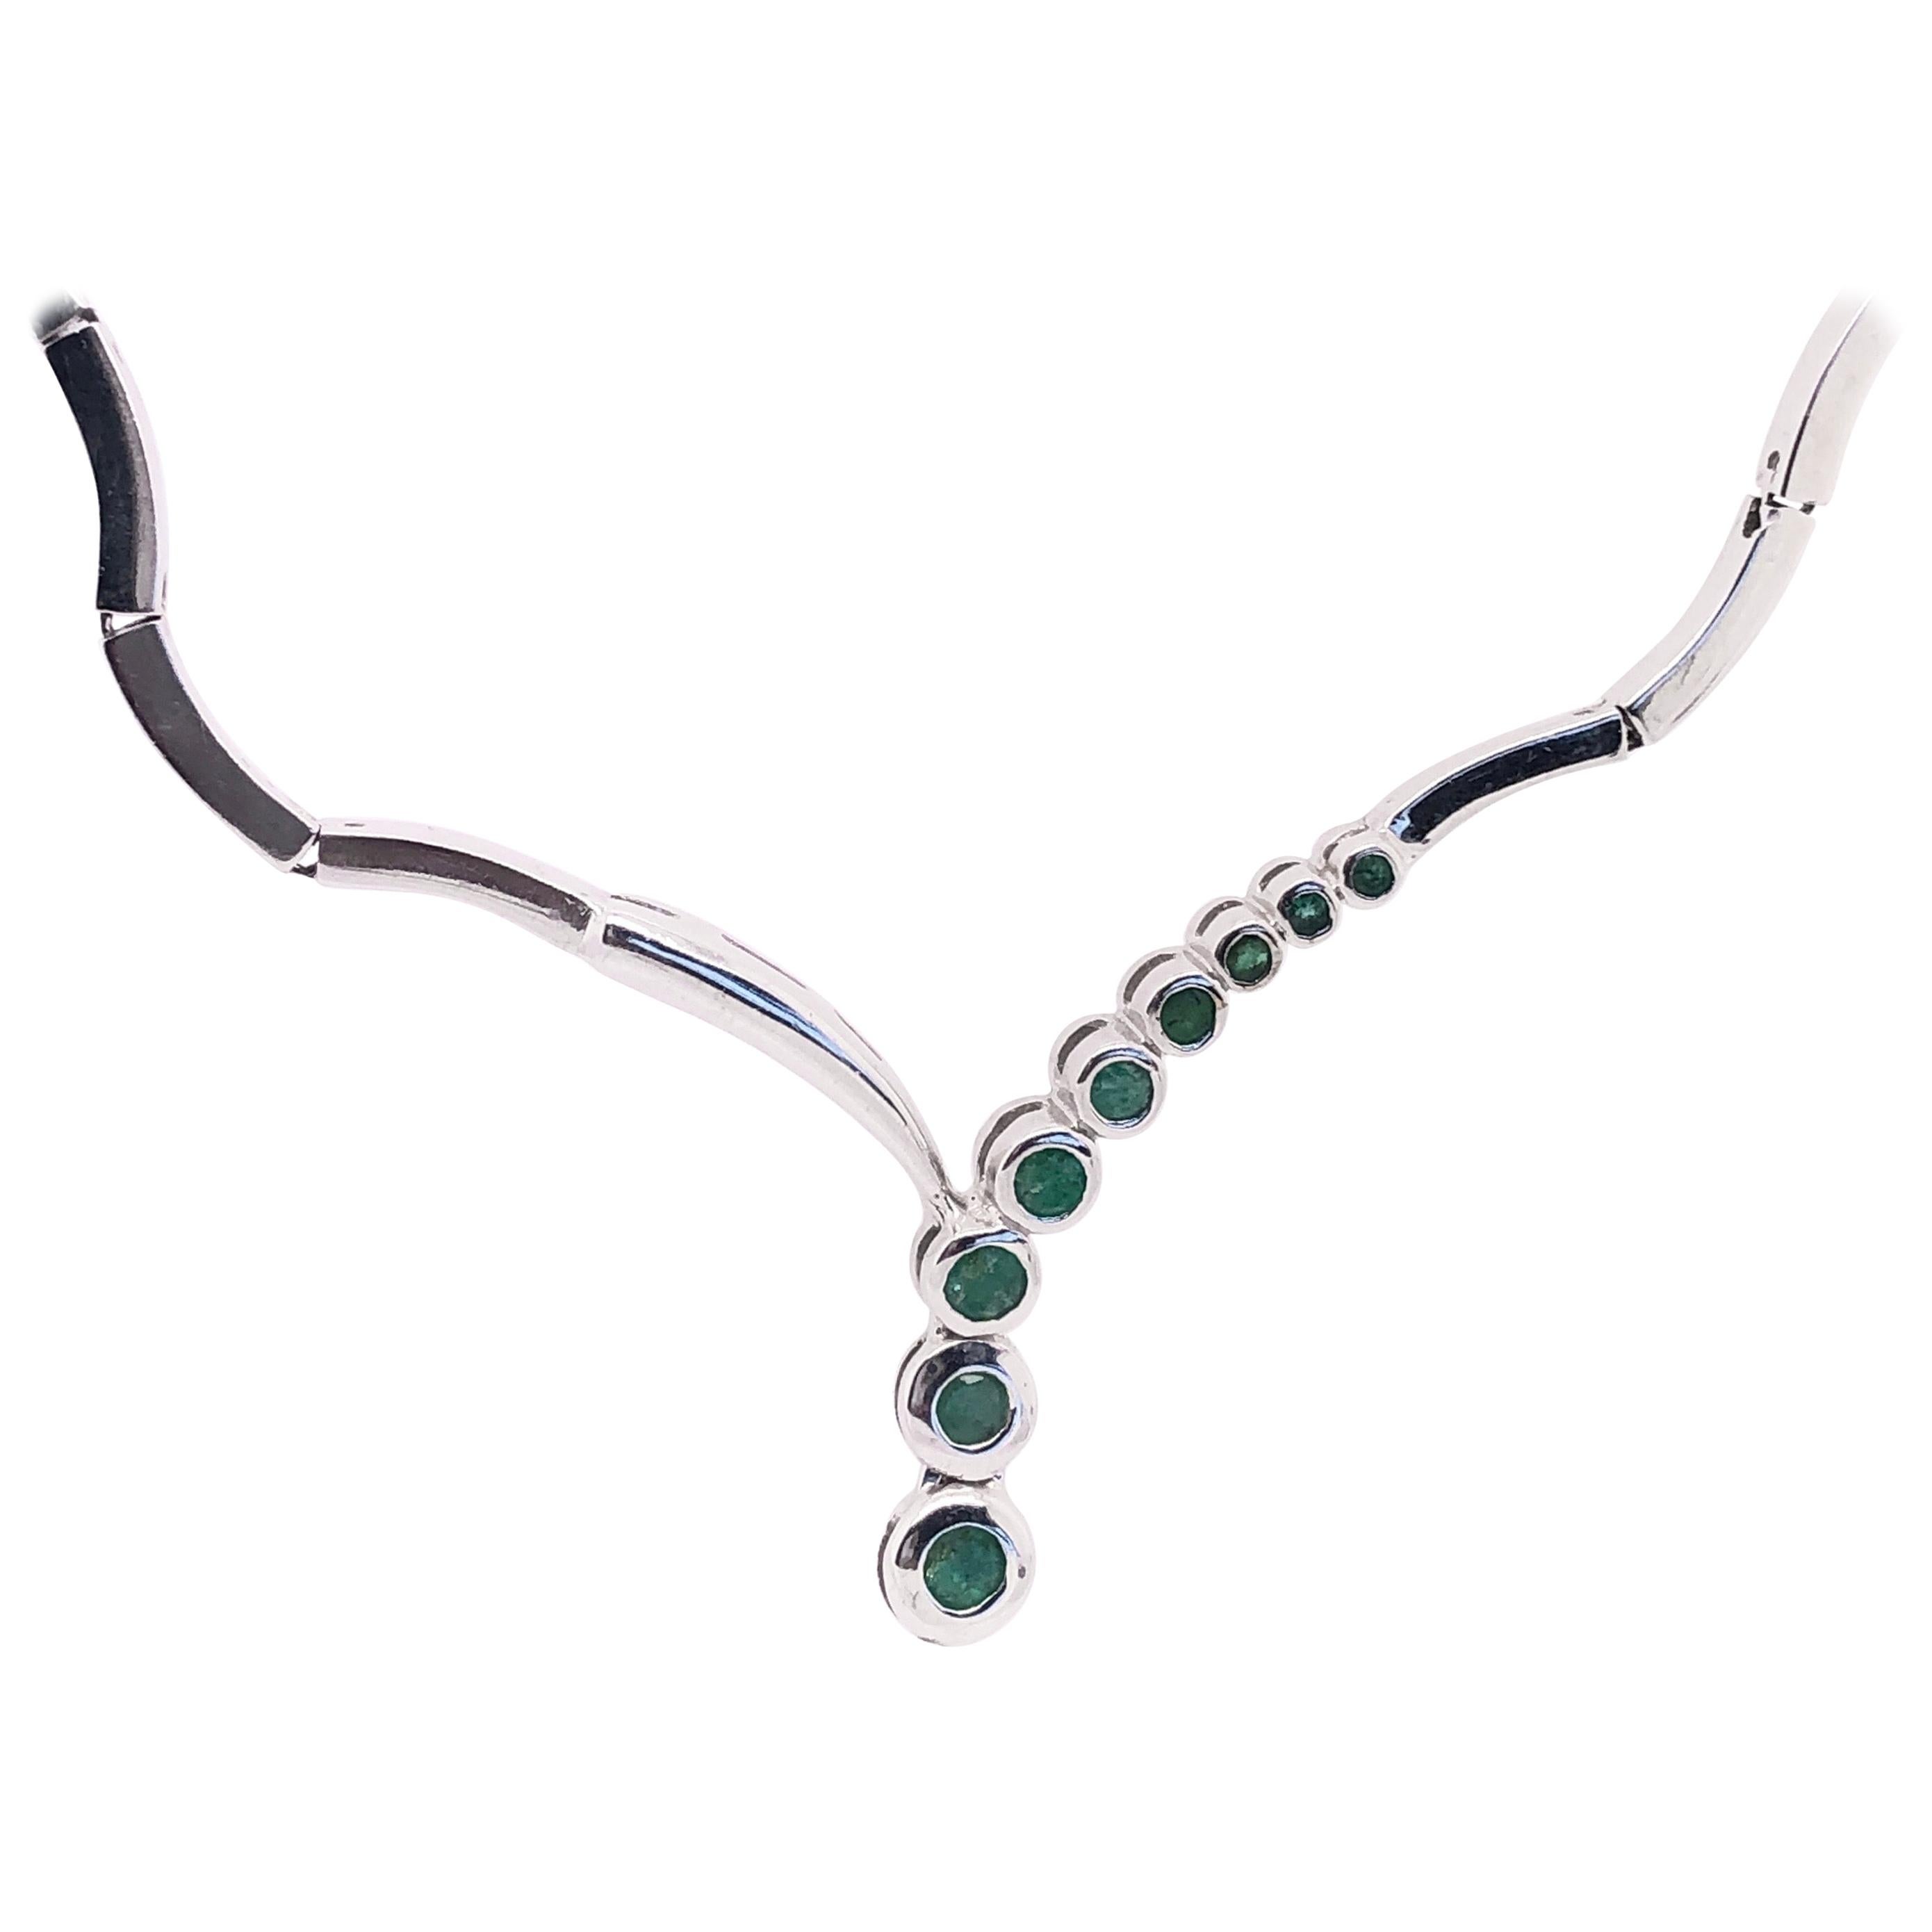 14 Karat White Gold Fashion Necklace with Round Emeralds